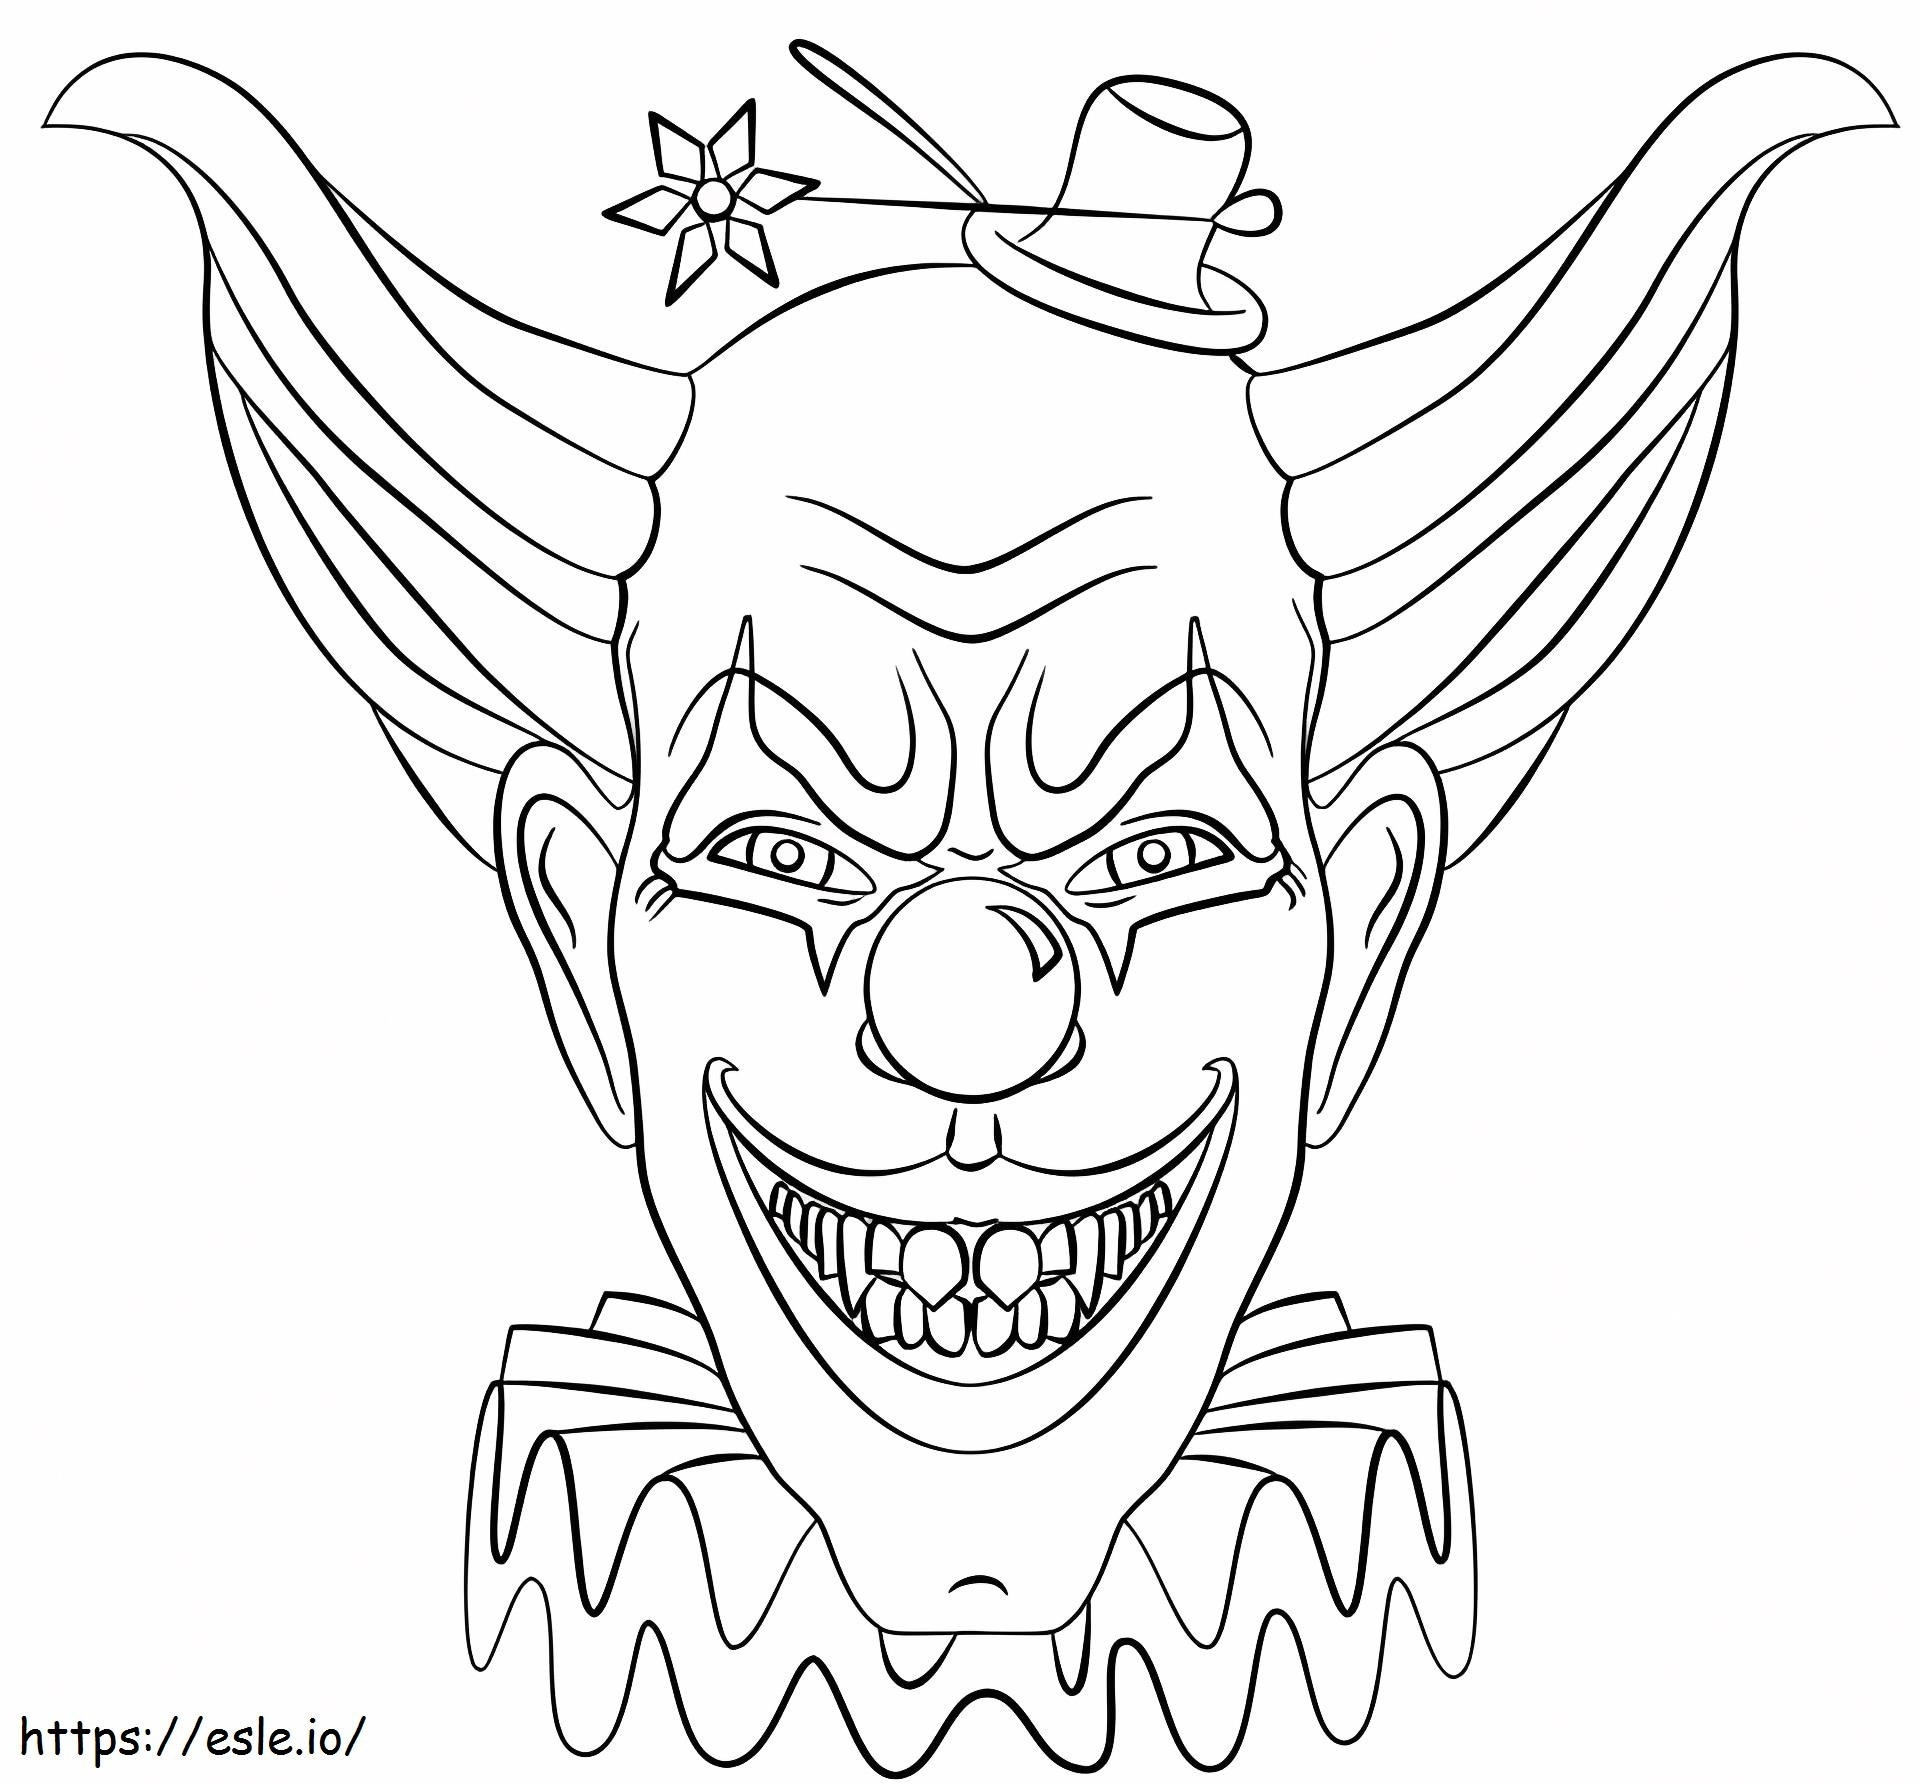 Wütender Clown ausmalbilder